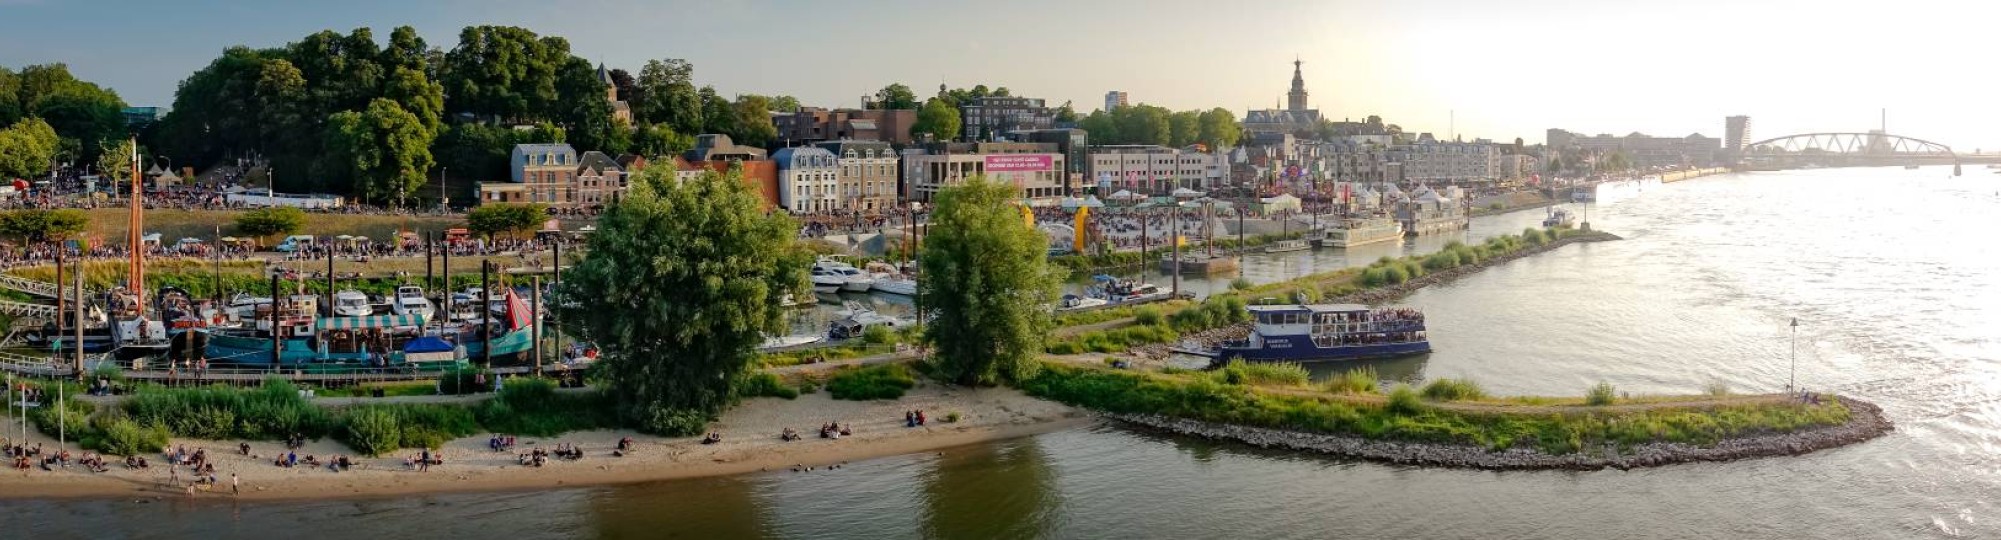 Nijmegen panorama waalkade en stadsaanzicht